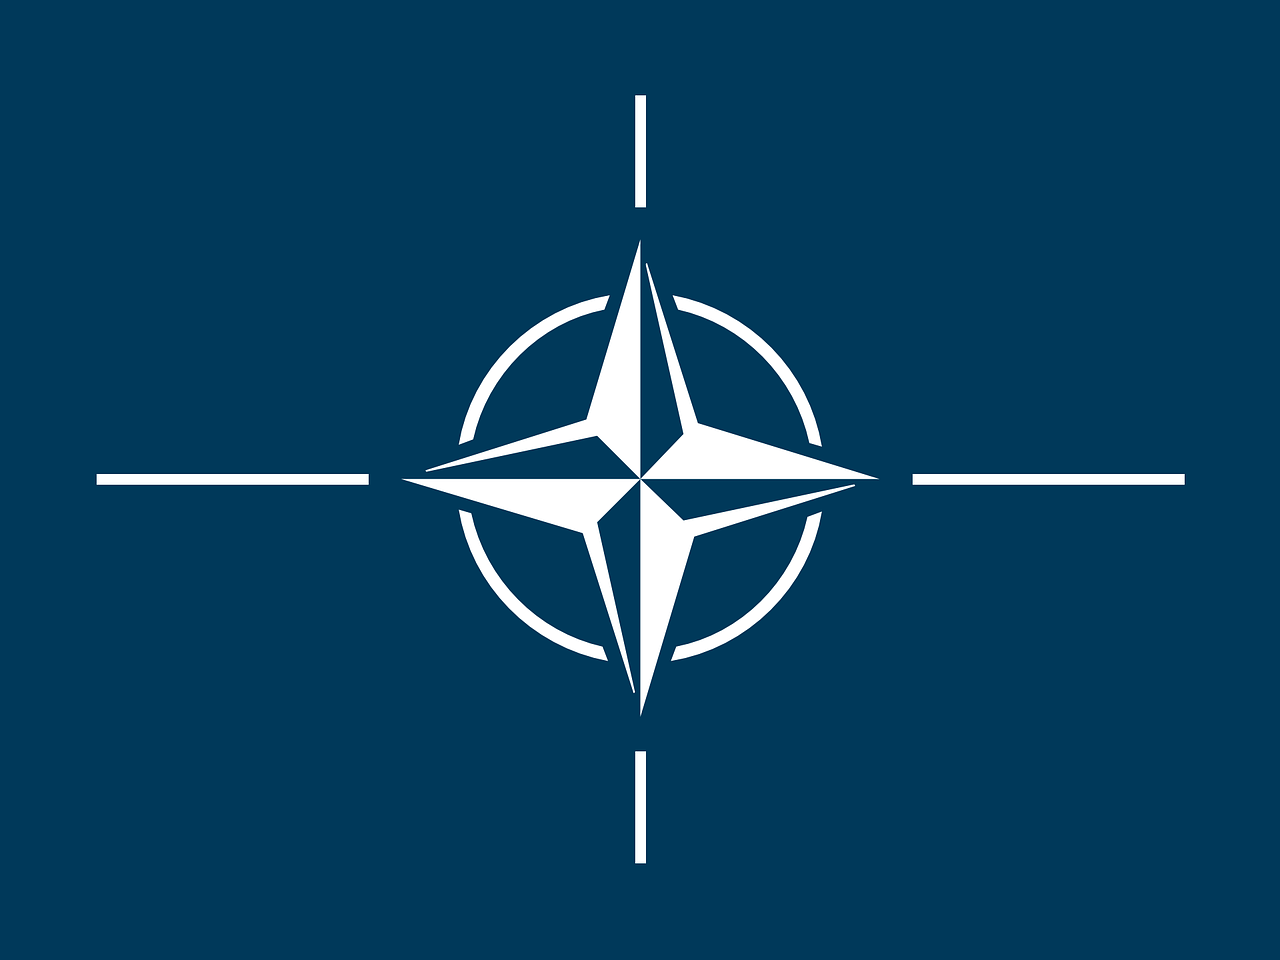 NATO_zaszlo